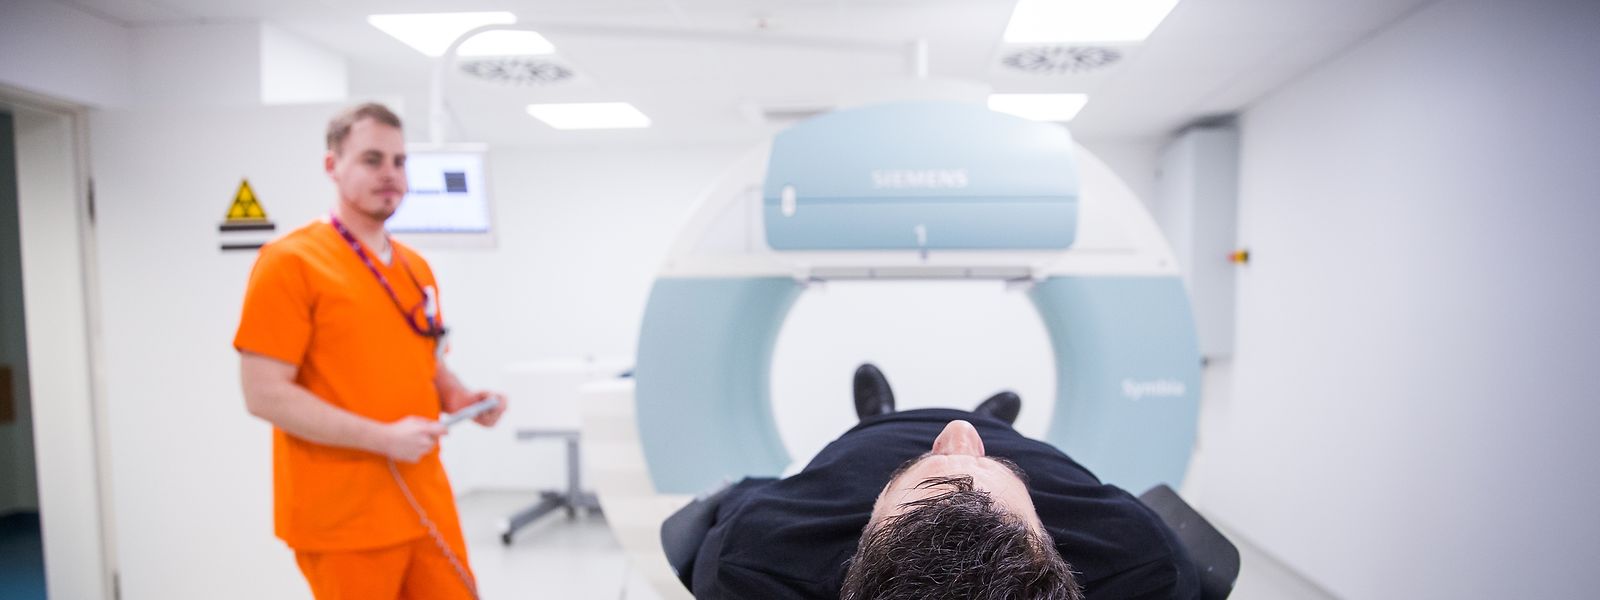 Diagnose ohne Strahlenbelastung - Ärzte und Patienten mögen den IRM.